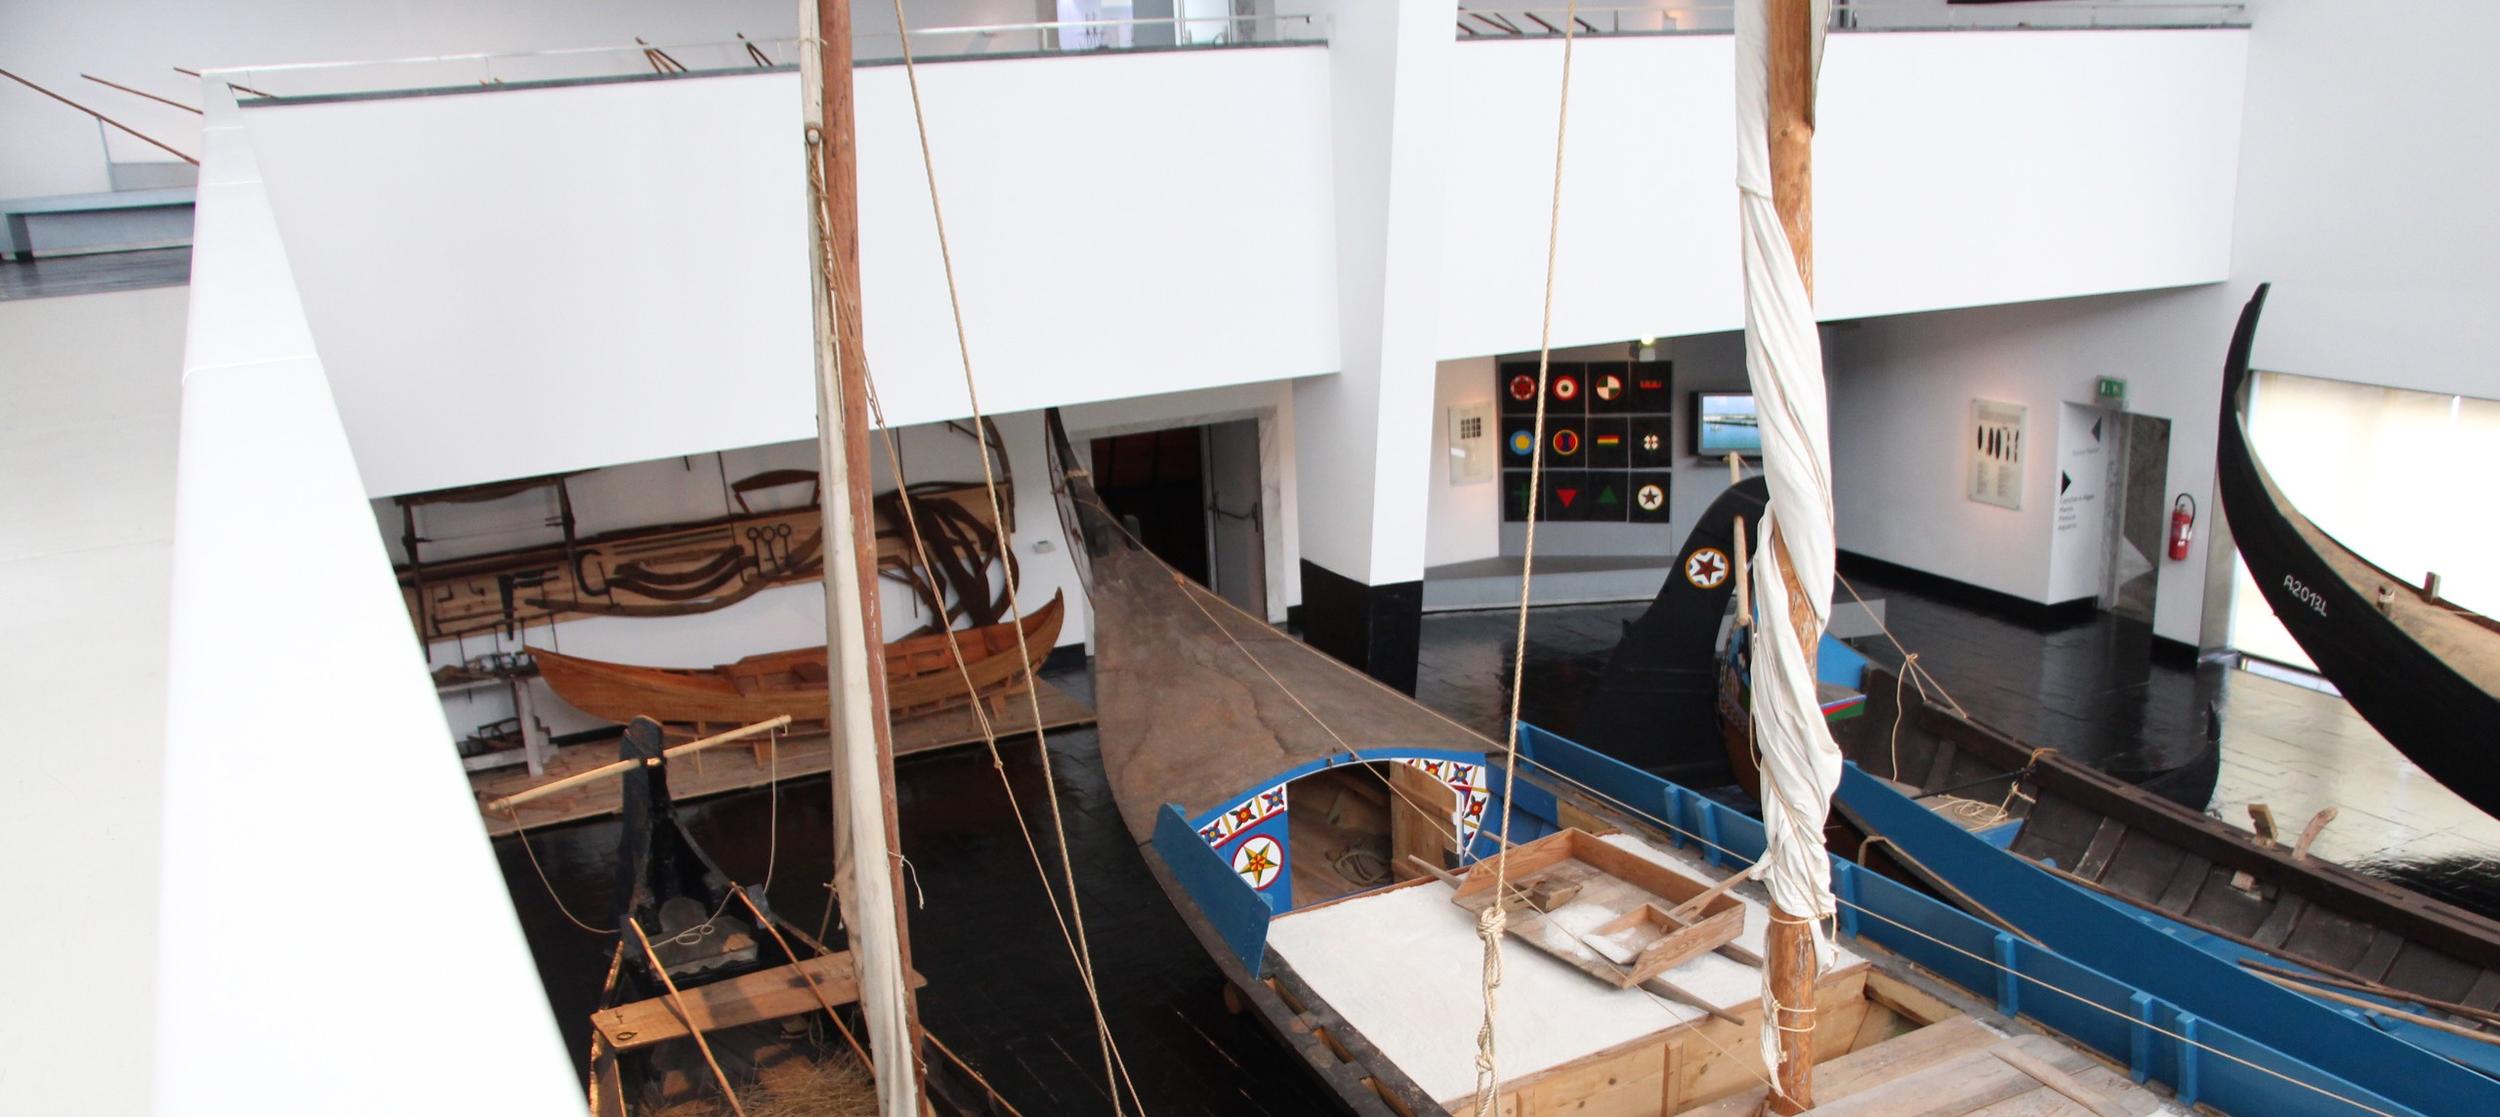 1 de outubro - Dia Aberto no Museu Marítimo de Ílhavo e Navio-Museu Santo André